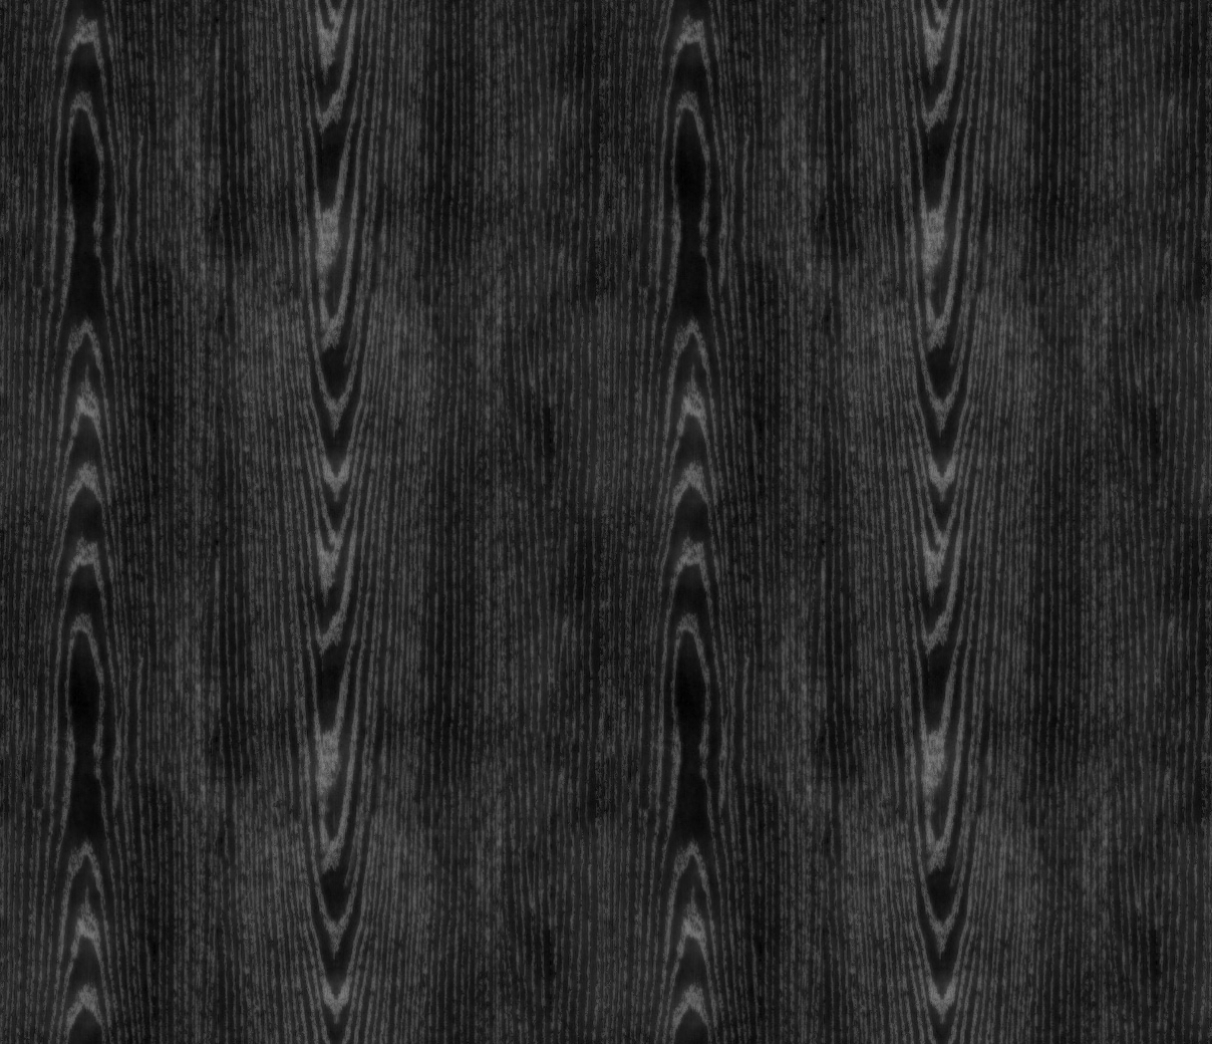 Black Wood Flooring Texture Seamless Wood Flooring Design